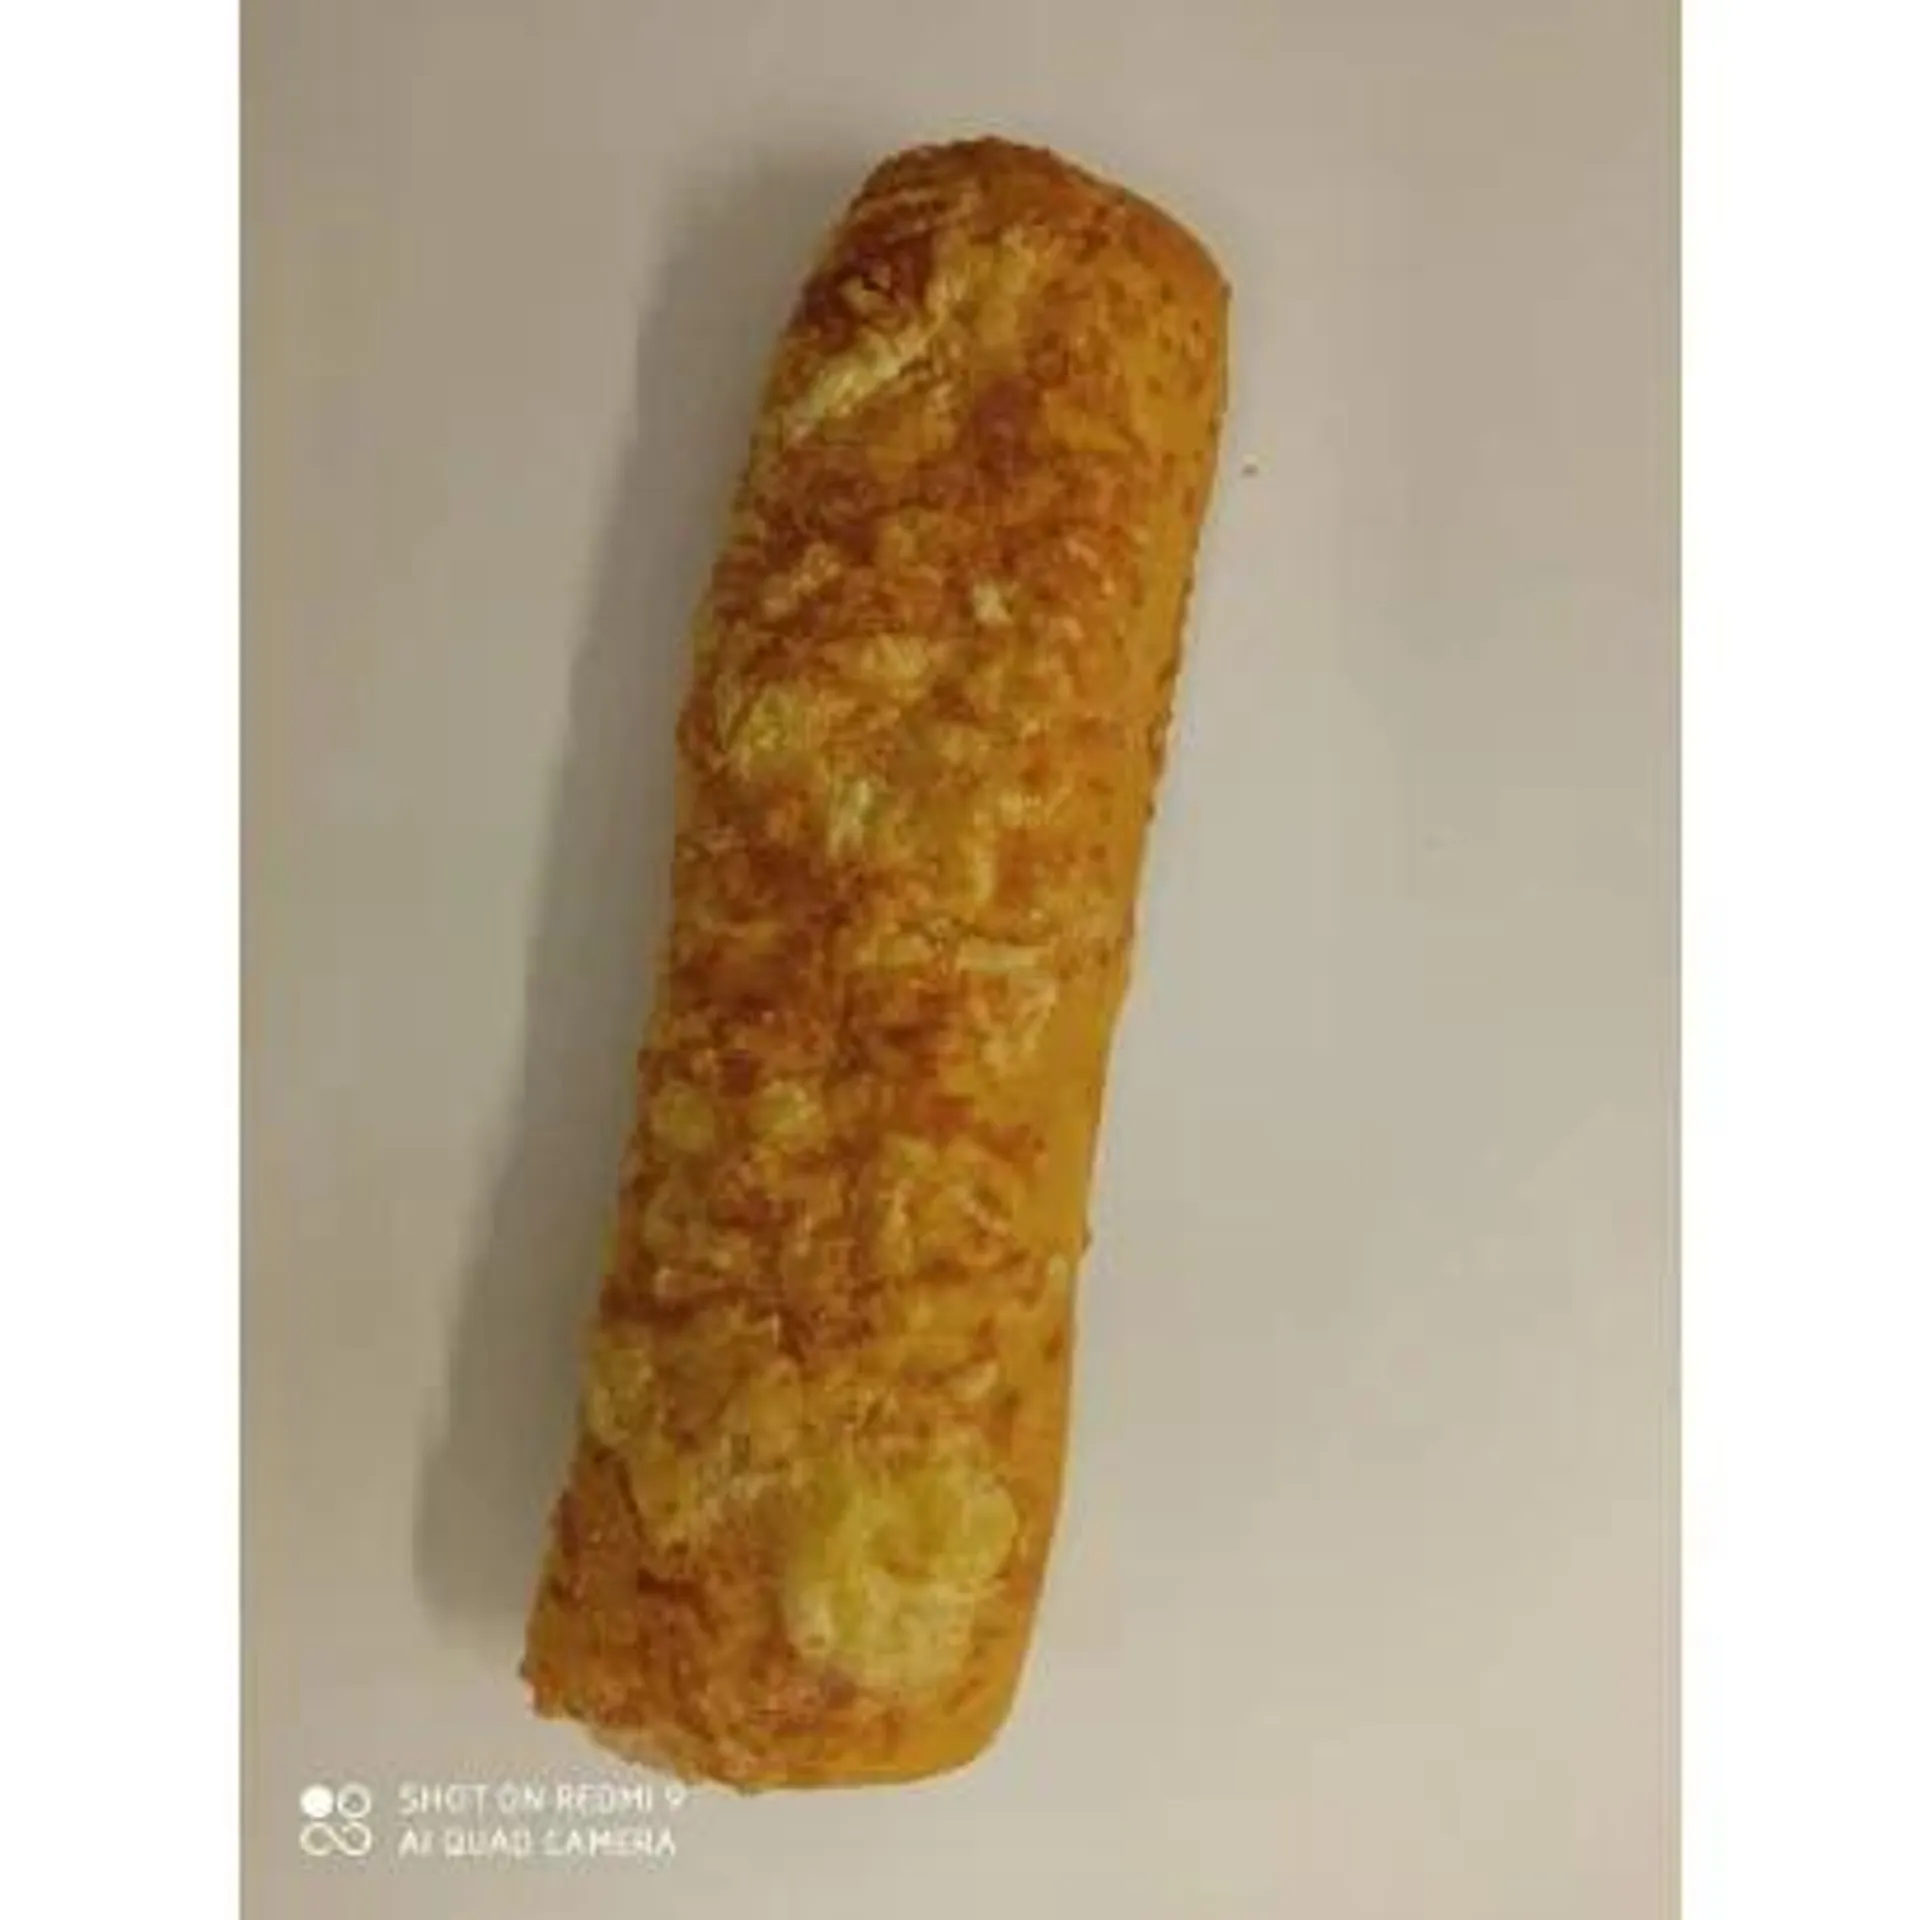 Prebaked-quickfrozen cheesy baguette